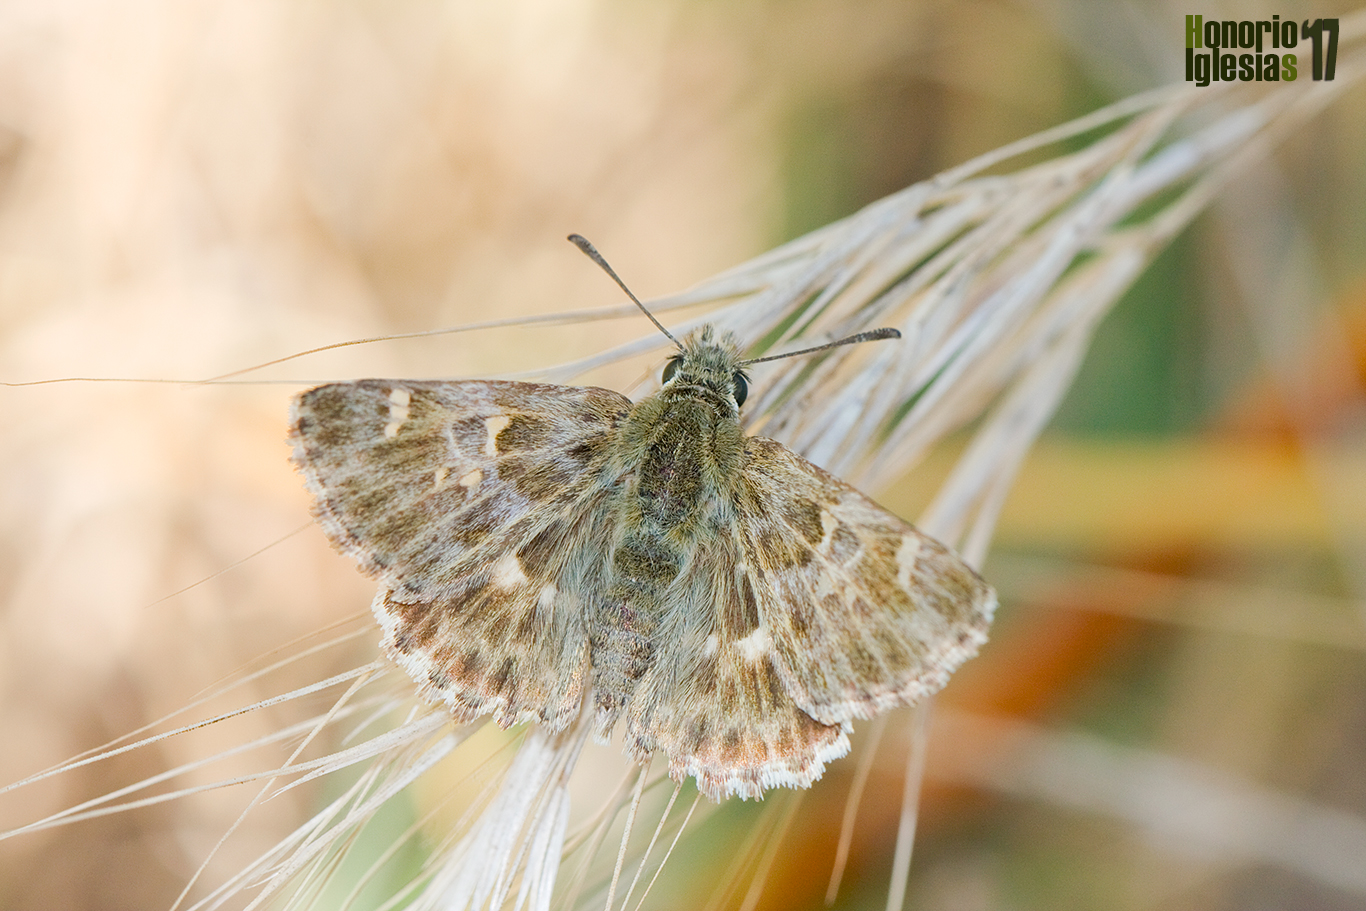 Ejemplar de mariposa piquitos del marrubio o piquitos (Carcharodus baeticus) mostrando el anverso alar, descansando sobre una gramínea.